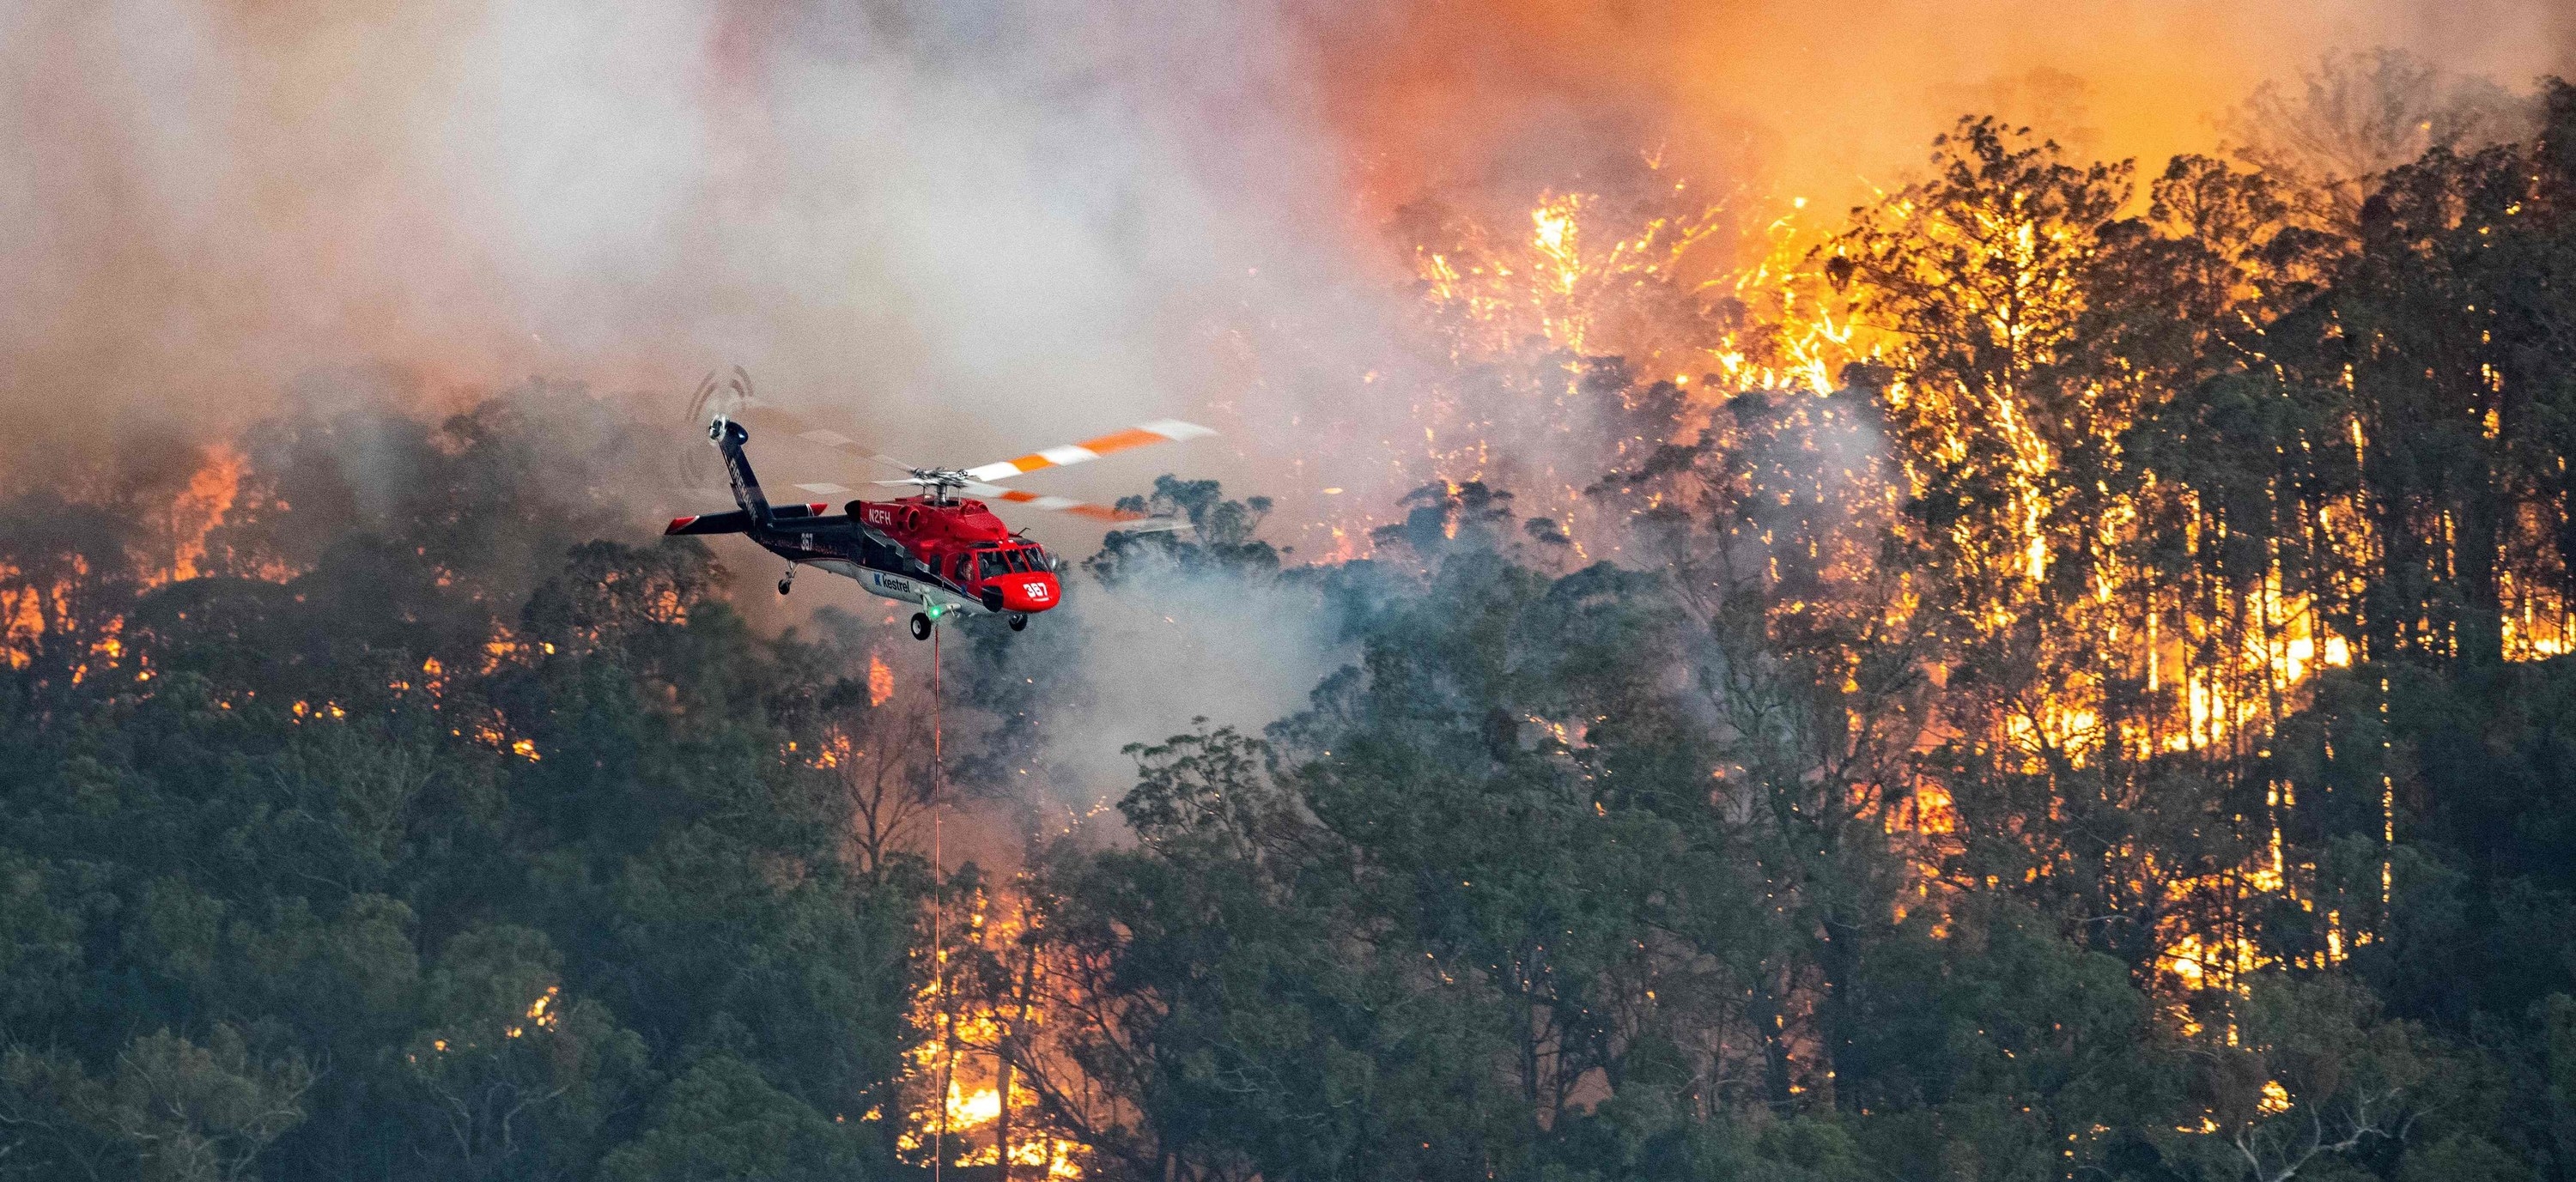 オーストラリアの山火事 と拡散された画像は誤り 画像は全て過去の森林火災